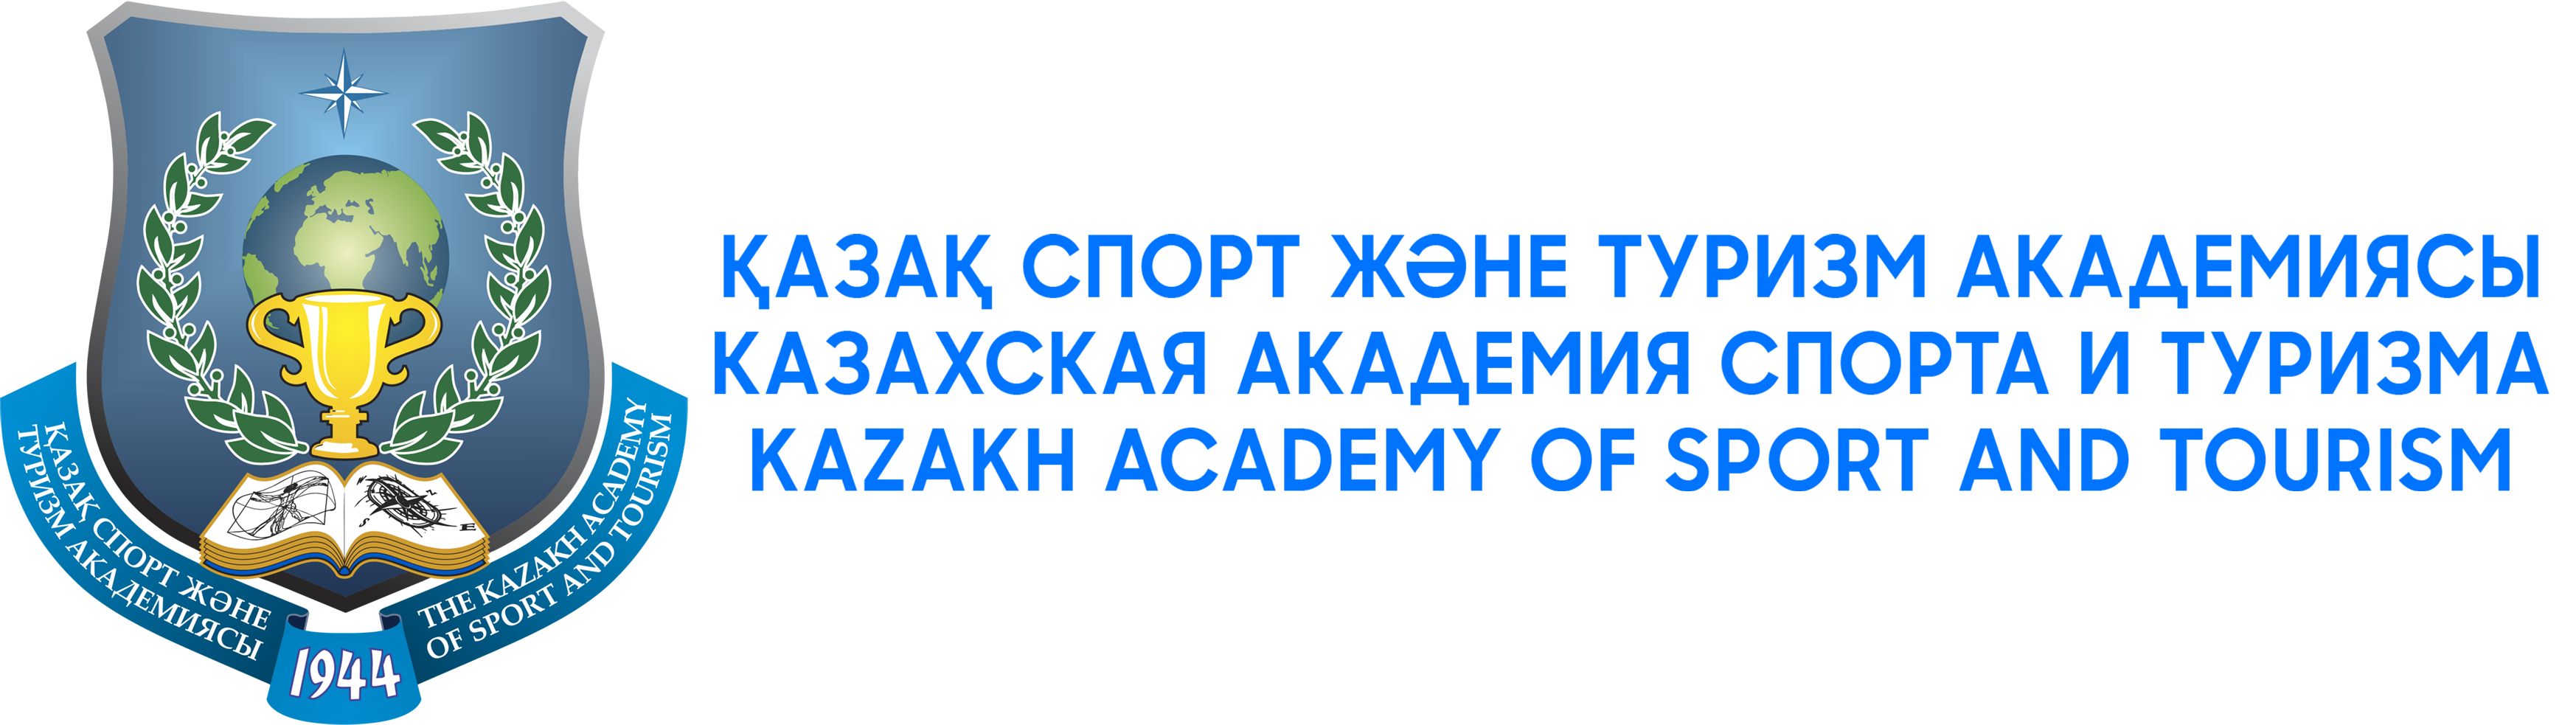 Логотип академии